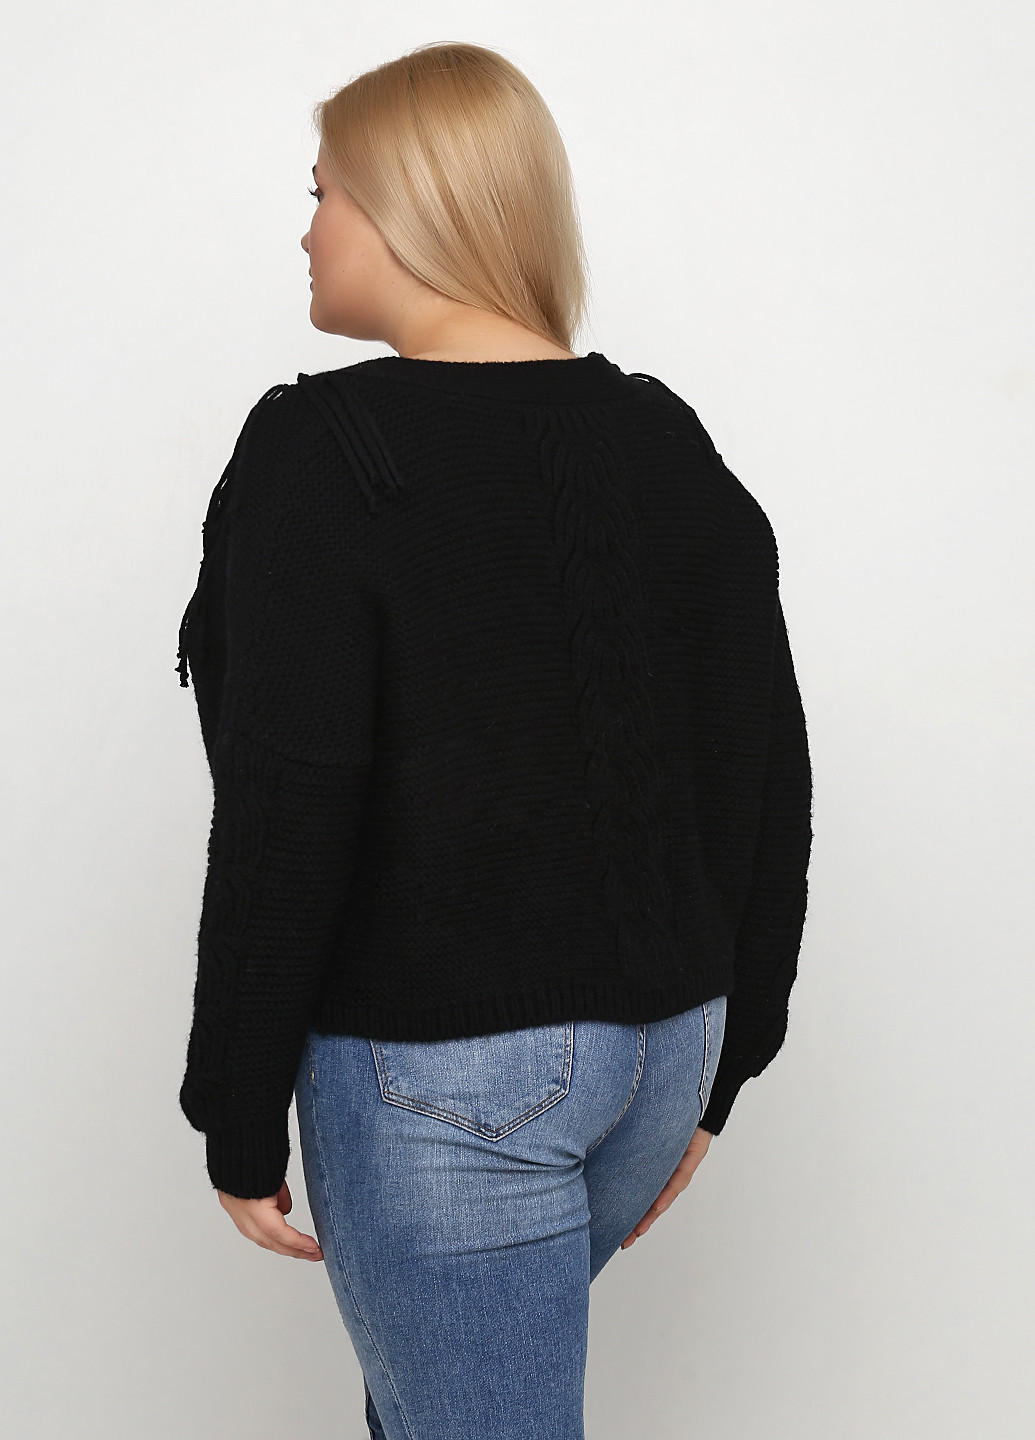 Черный демисезонный пуловер пуловер Bel Air